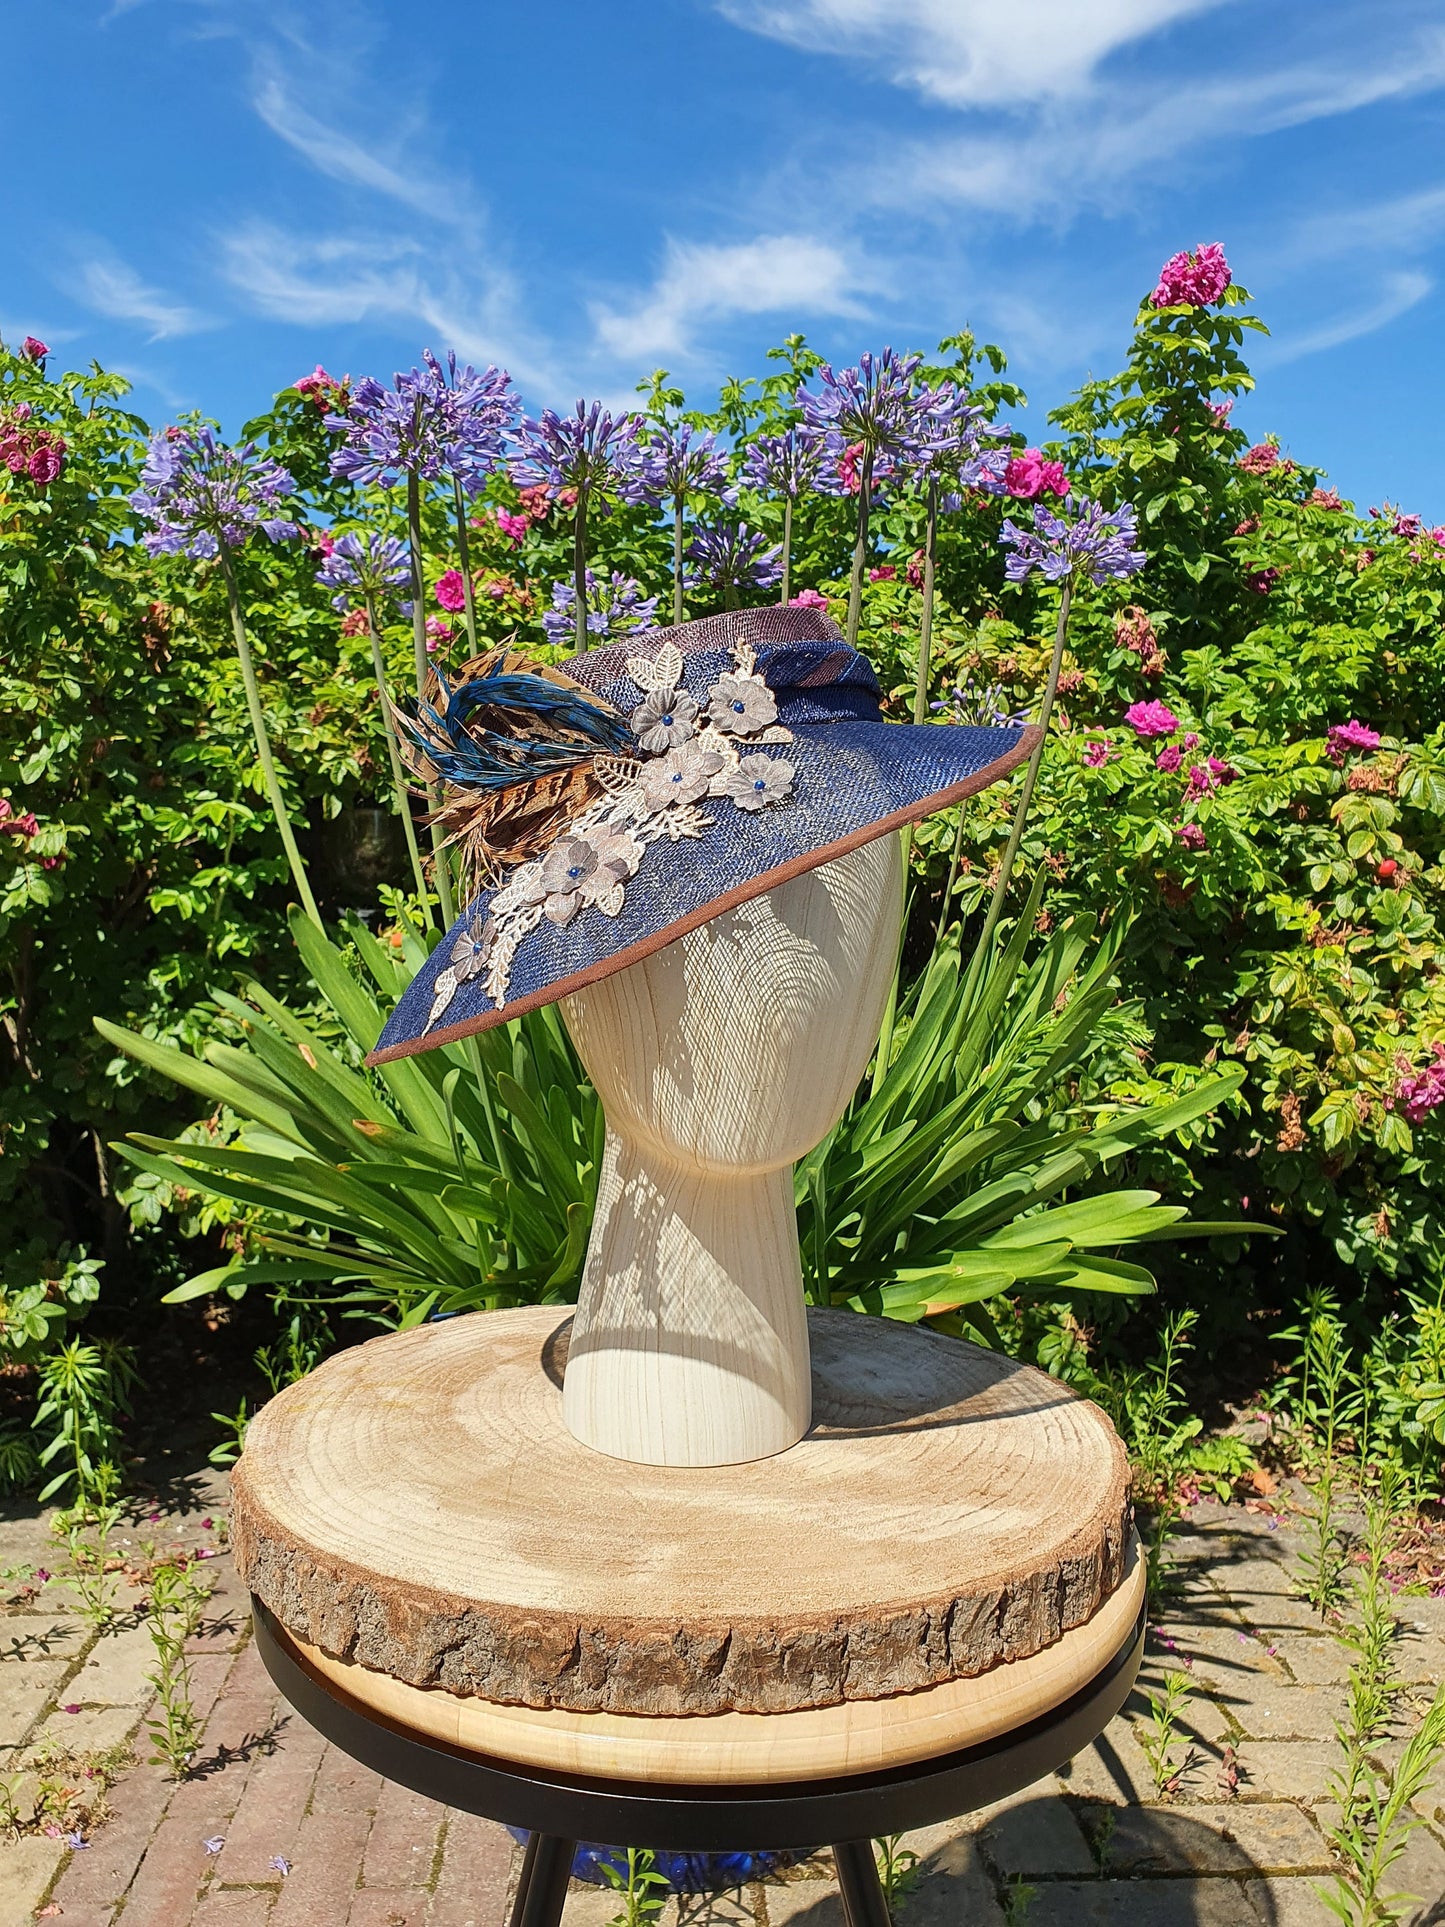 Elegante handgemaakte sinamay hoed in blauw en bruin- Elegante stijl voor elke gelegenheid, evenementenhoed, huwelijkshoed, gastenhoed